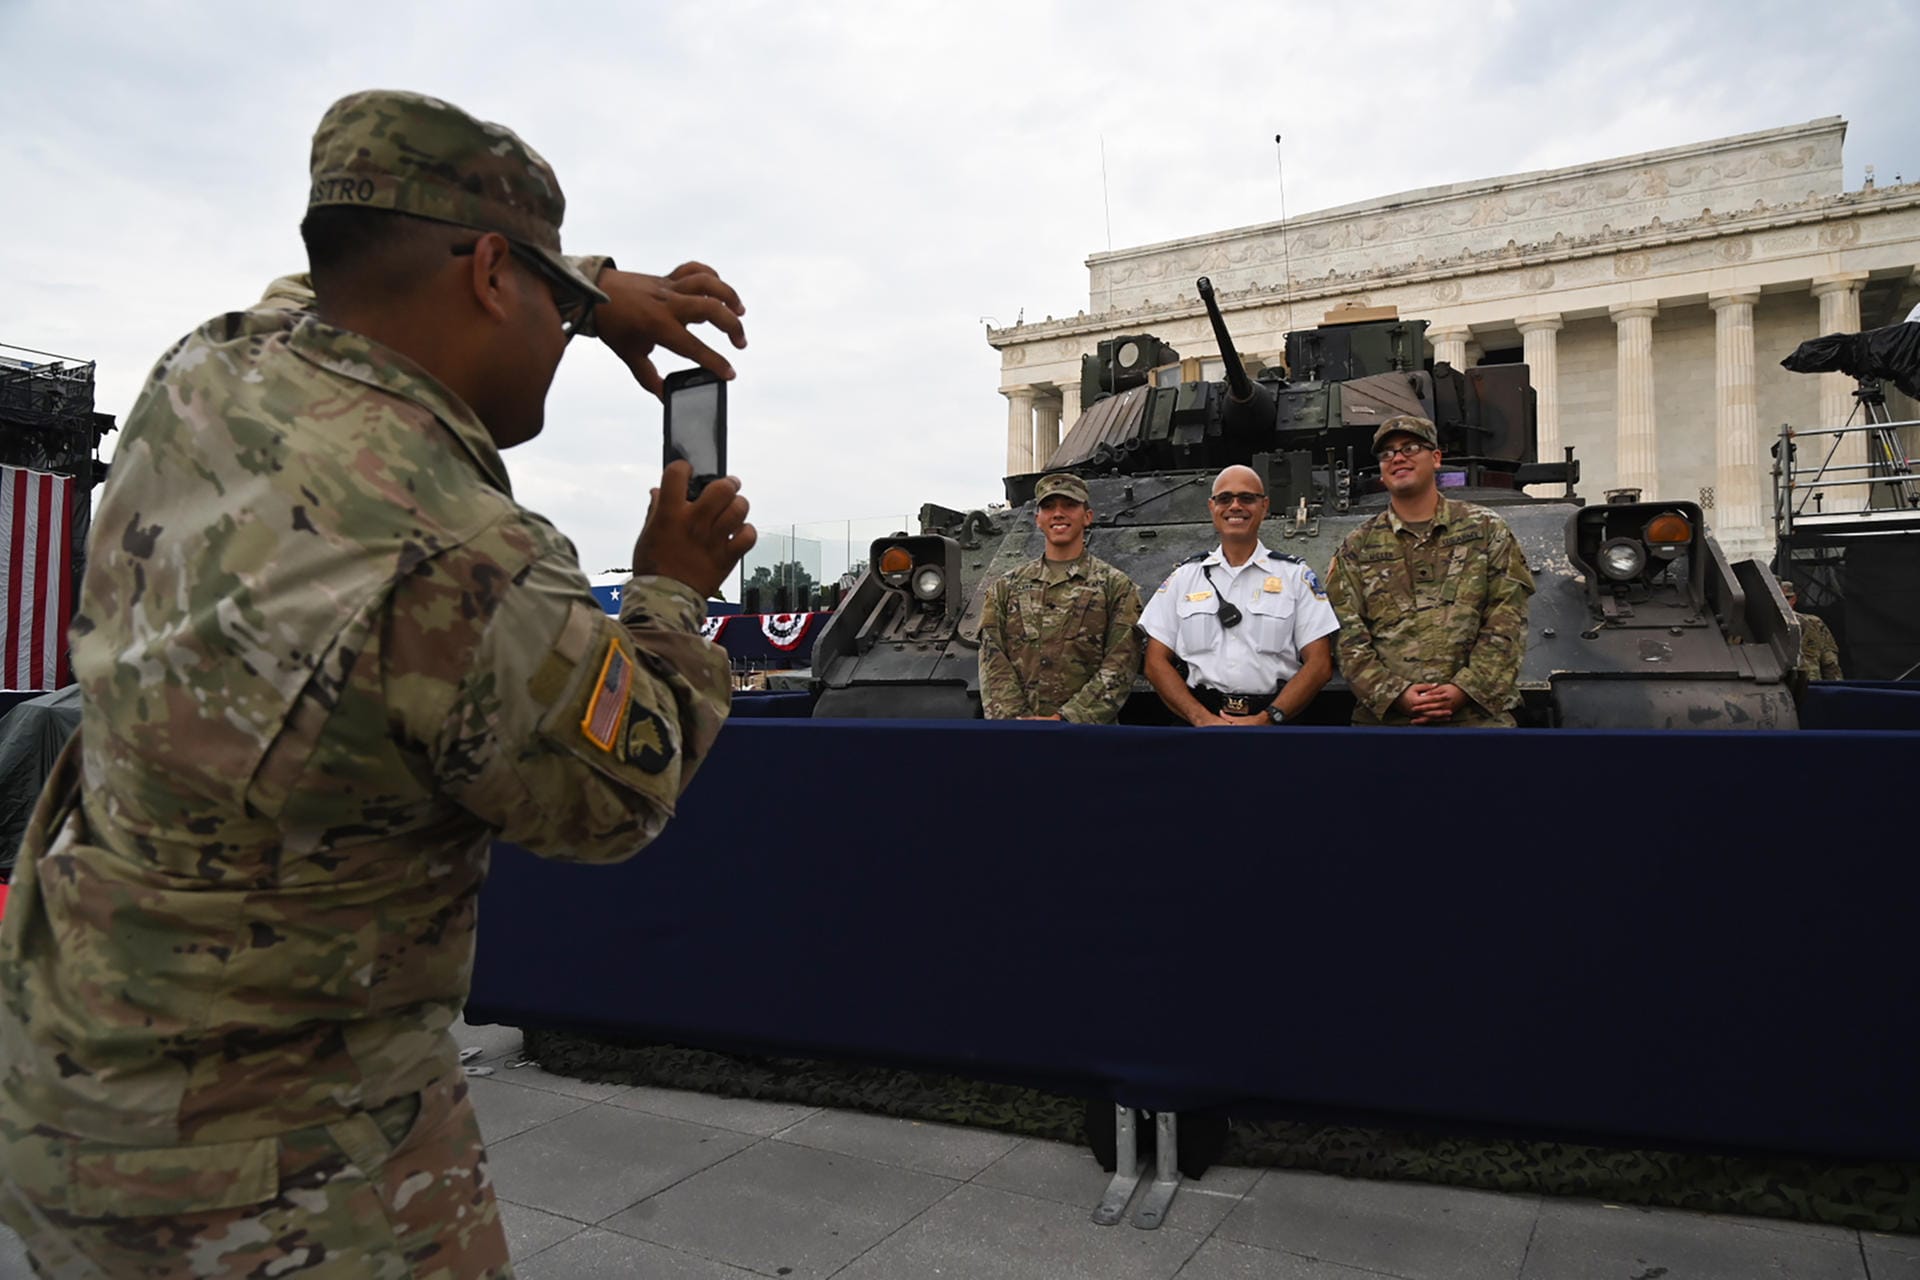 Mitglieder der US-Streitkräfte lassen sich vor der Militärparade fotografieren.